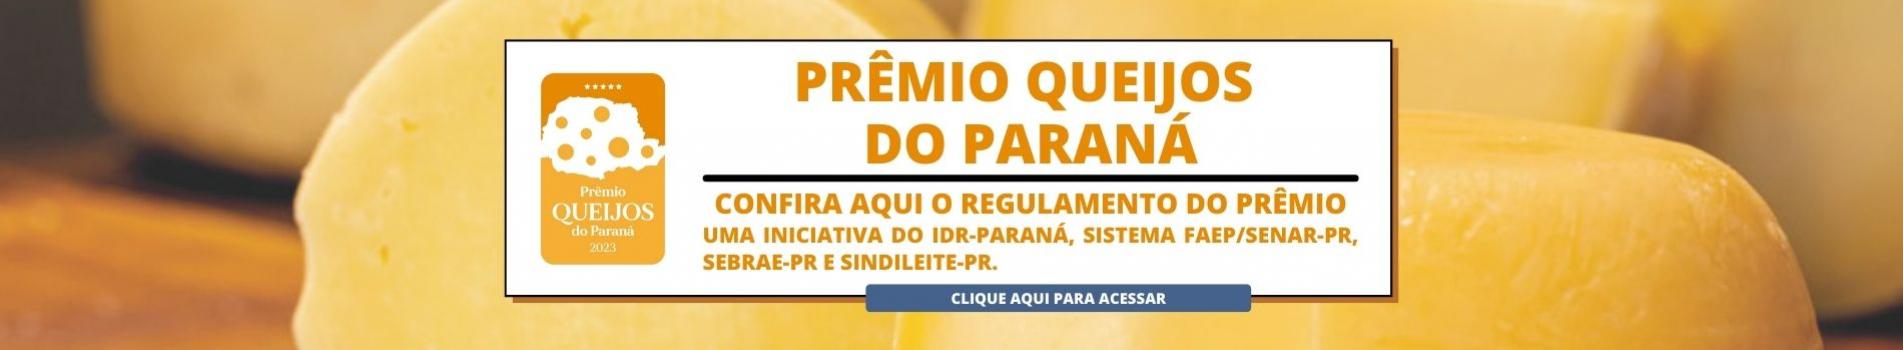 Prêmio Queijos do Paraná